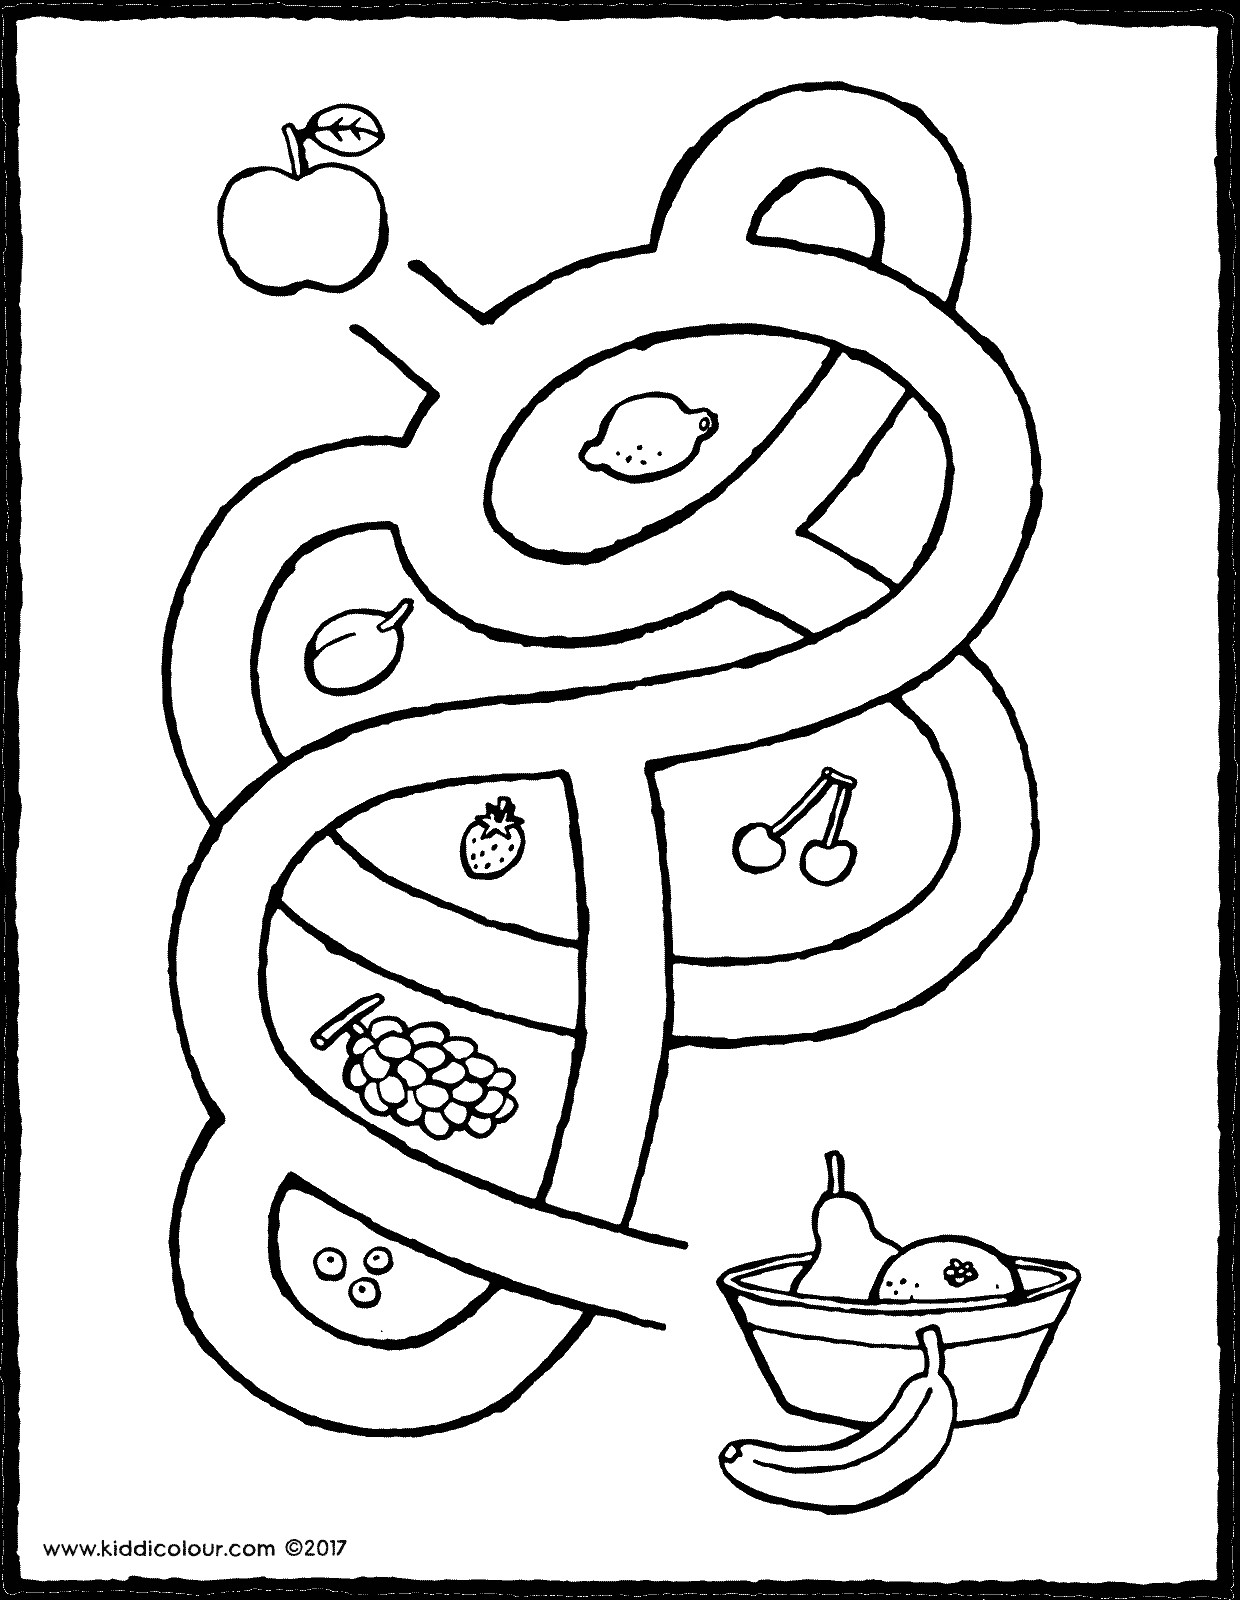 Ausmalbilder Obst
 Labyrinth mit Obst kiddimalseite